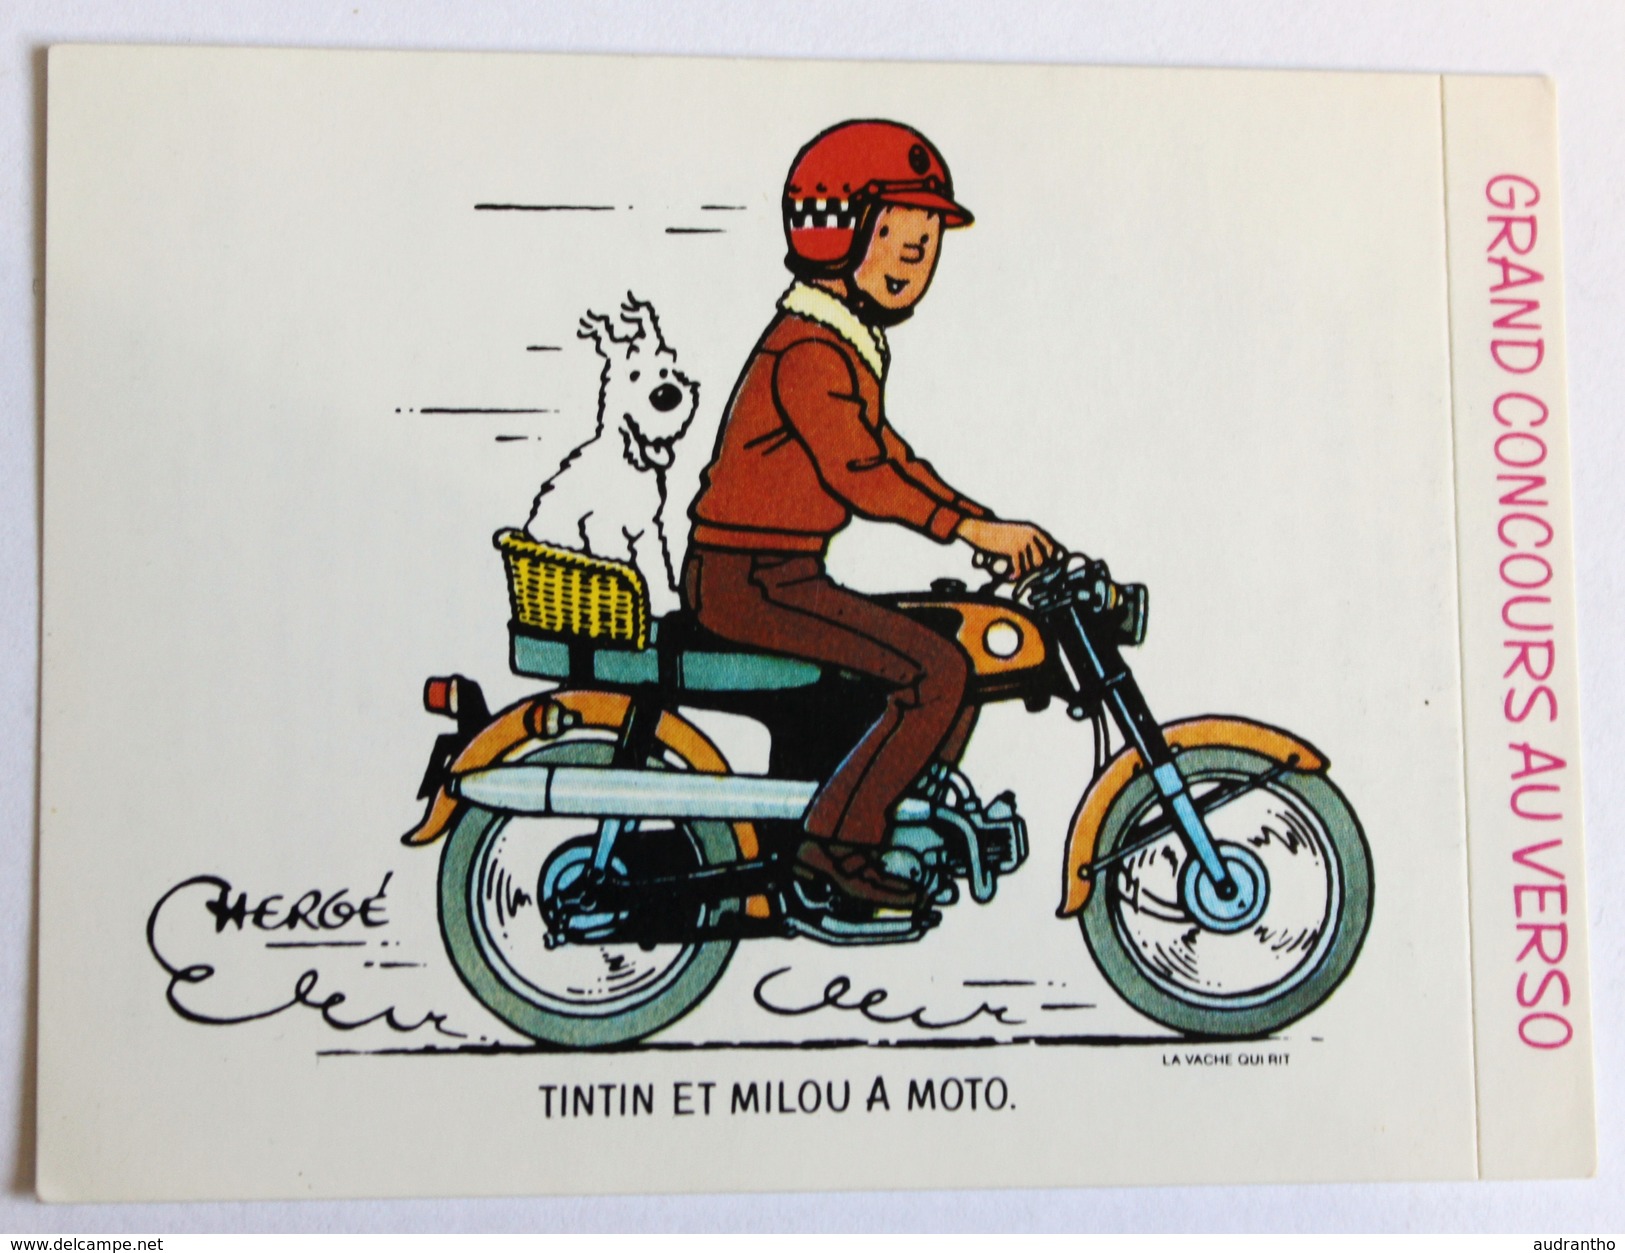 Autocollant La Vache Qui Rit Tintin Et Milou En Moto Hergé 1976 Grand Concours De Dessin - Autocollants